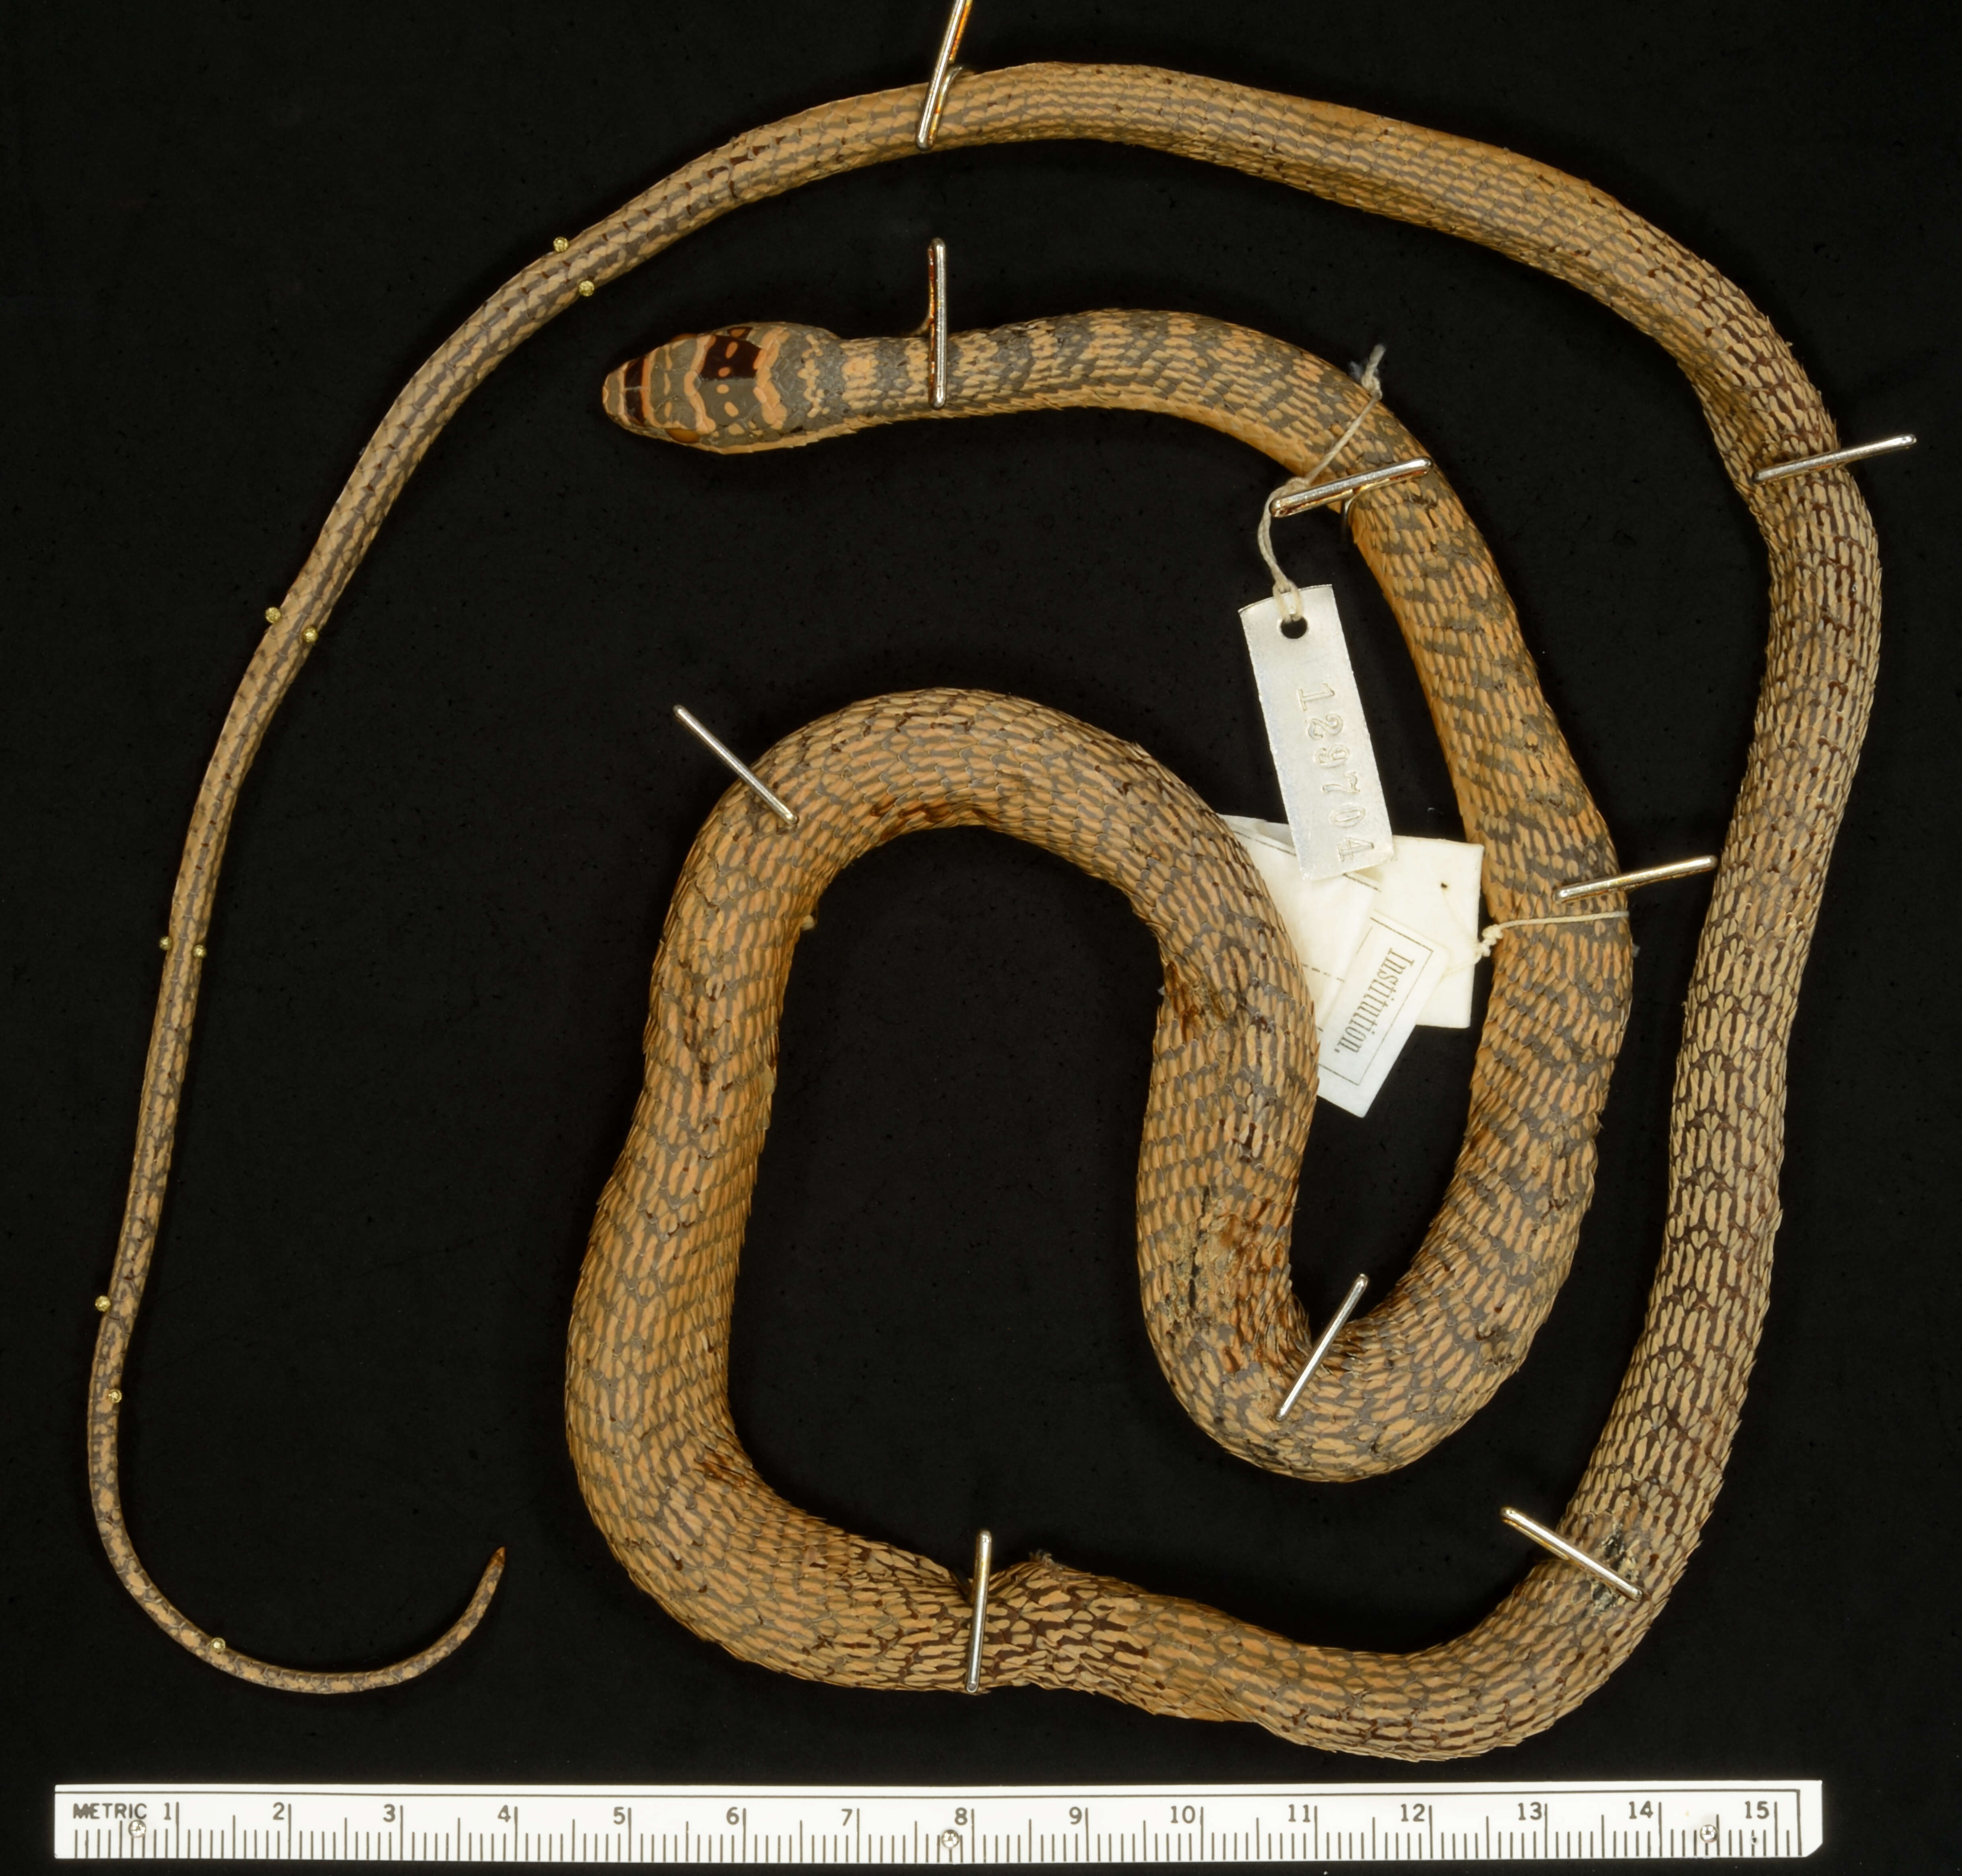 Image of Ornate Flying Snake